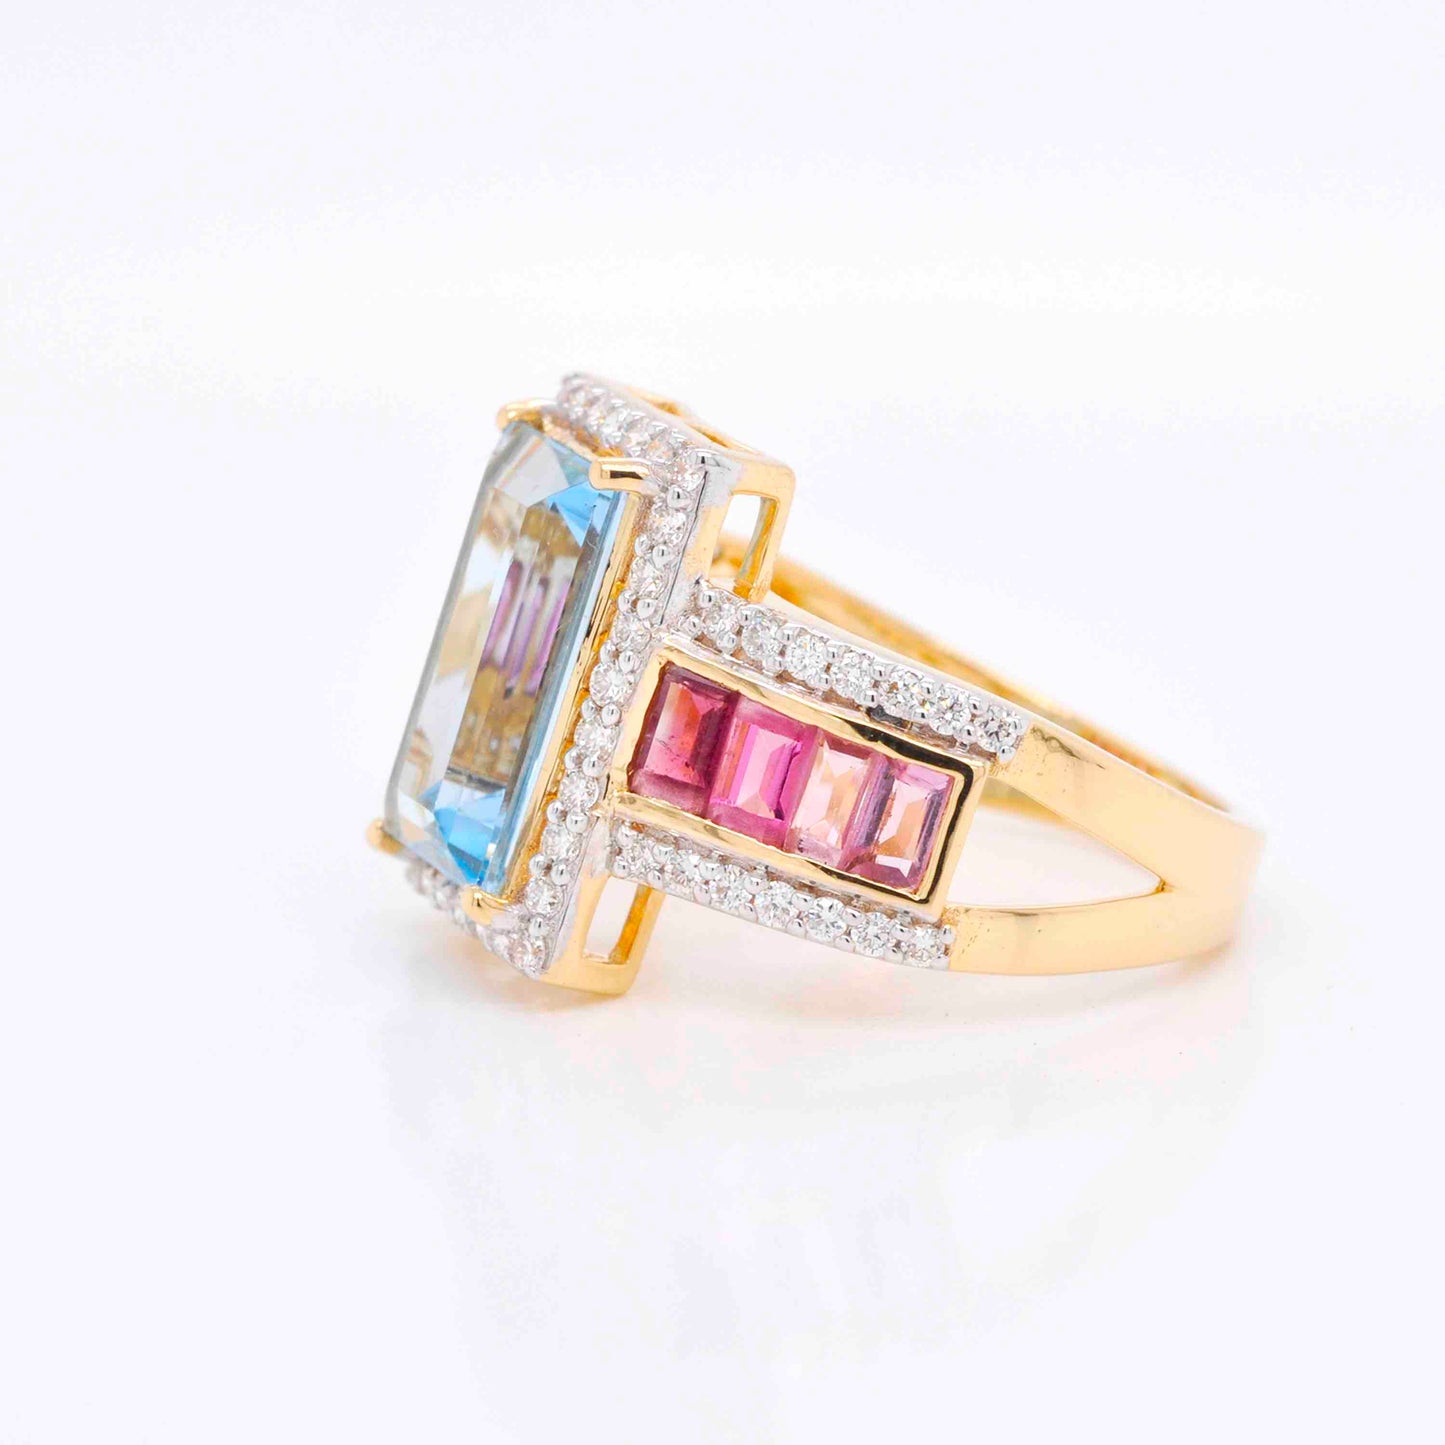 "Unique Aquamarine Pink Tourmaline Diamond Ring "